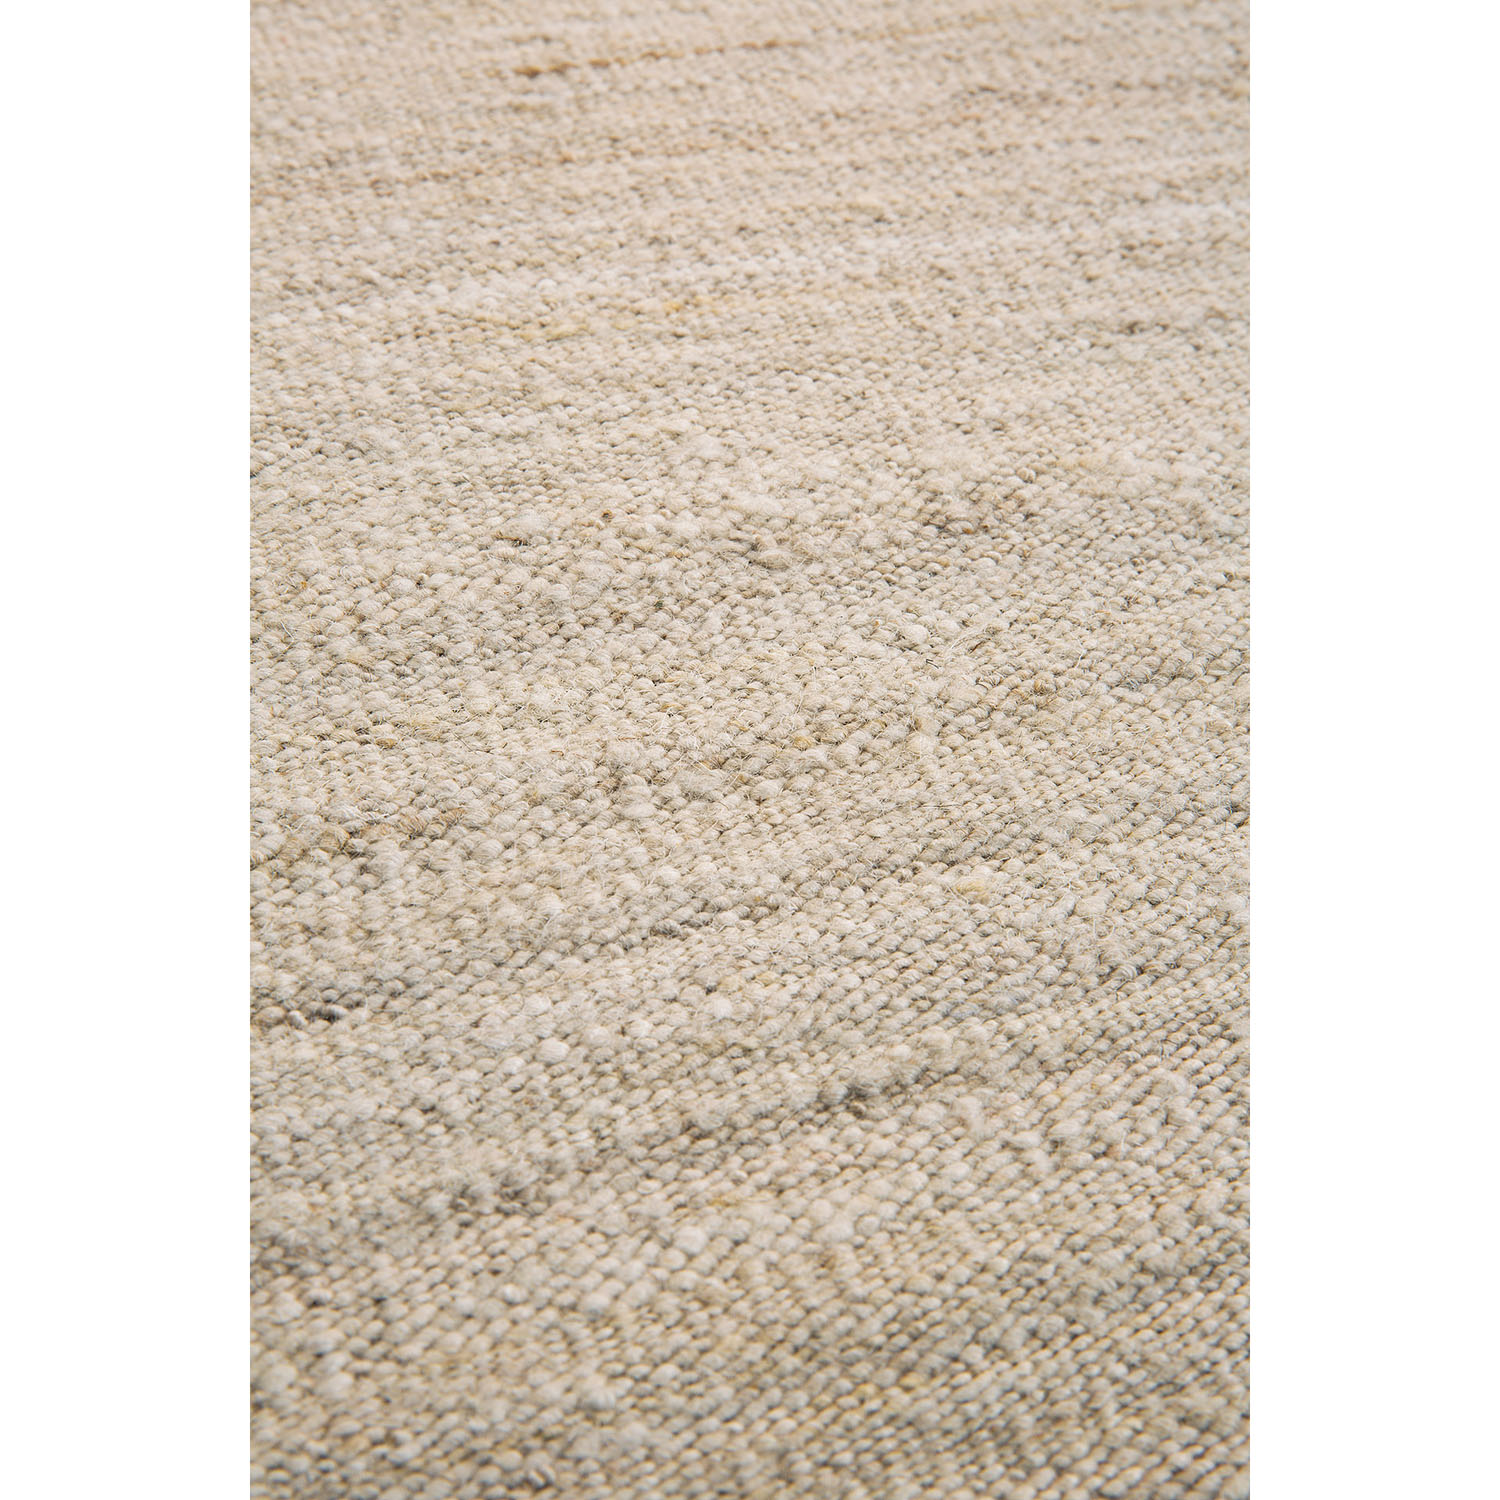 Nomad Kilim-Teppich Sand 100 % handgesponnene Wolle 21702